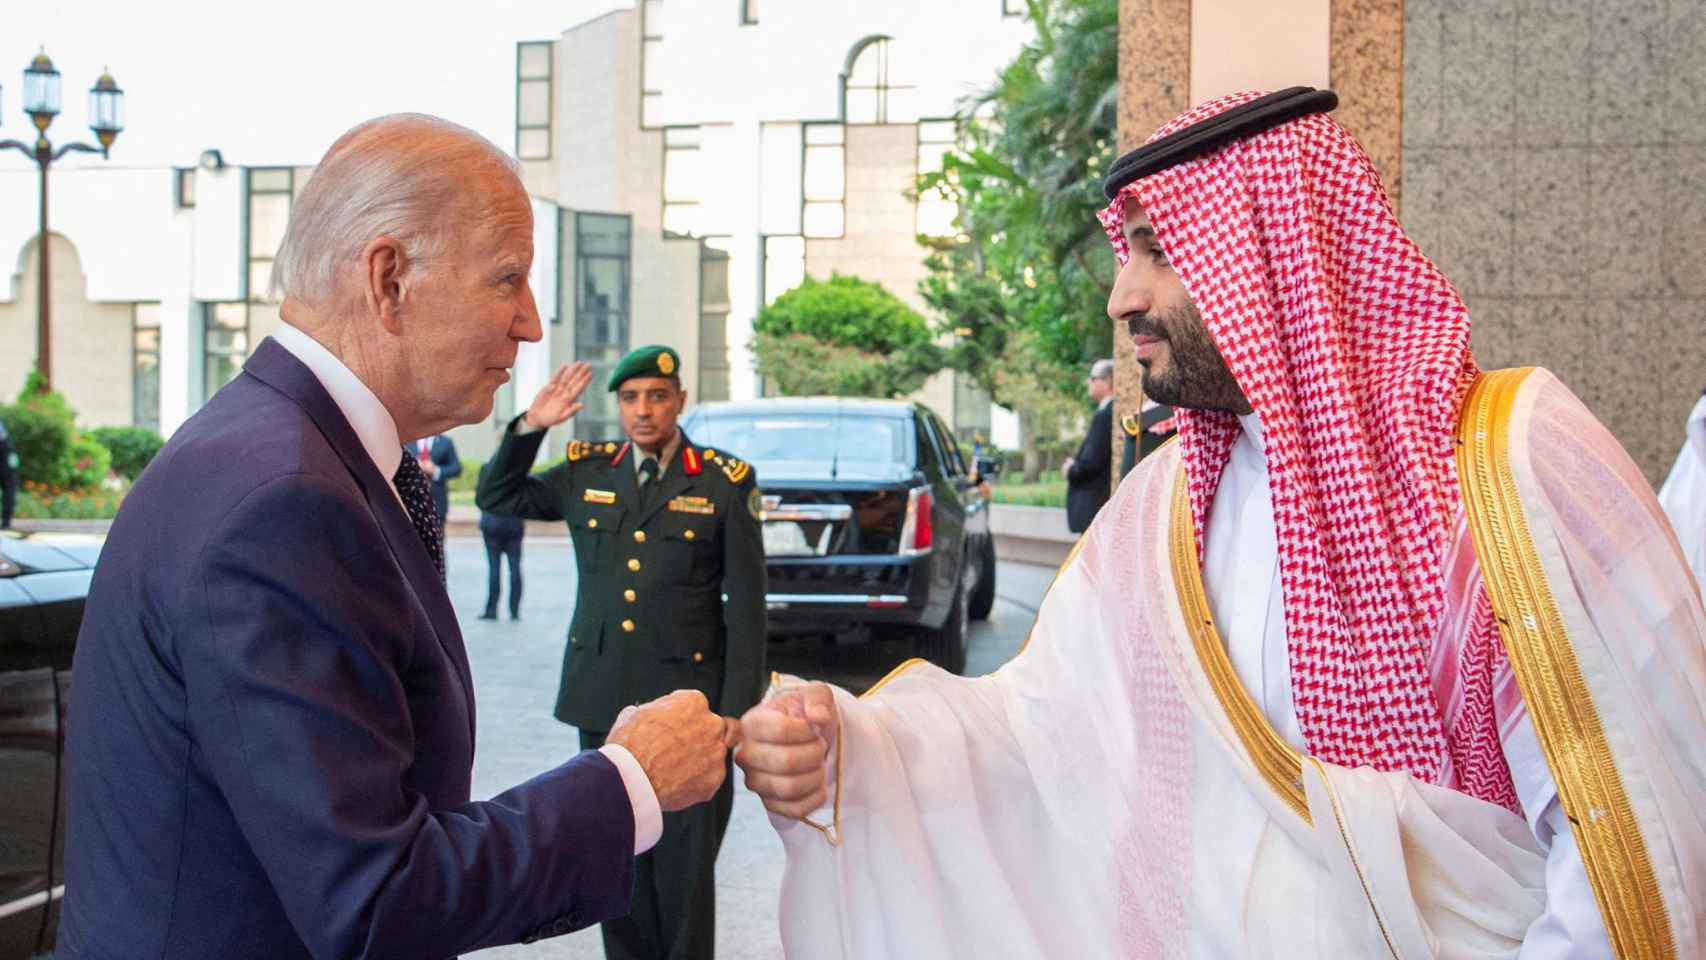 Con choque de puños: así ha sido el encuentro entre Biden y Mohamed bin Salman en Arabia Saudí thumbnail